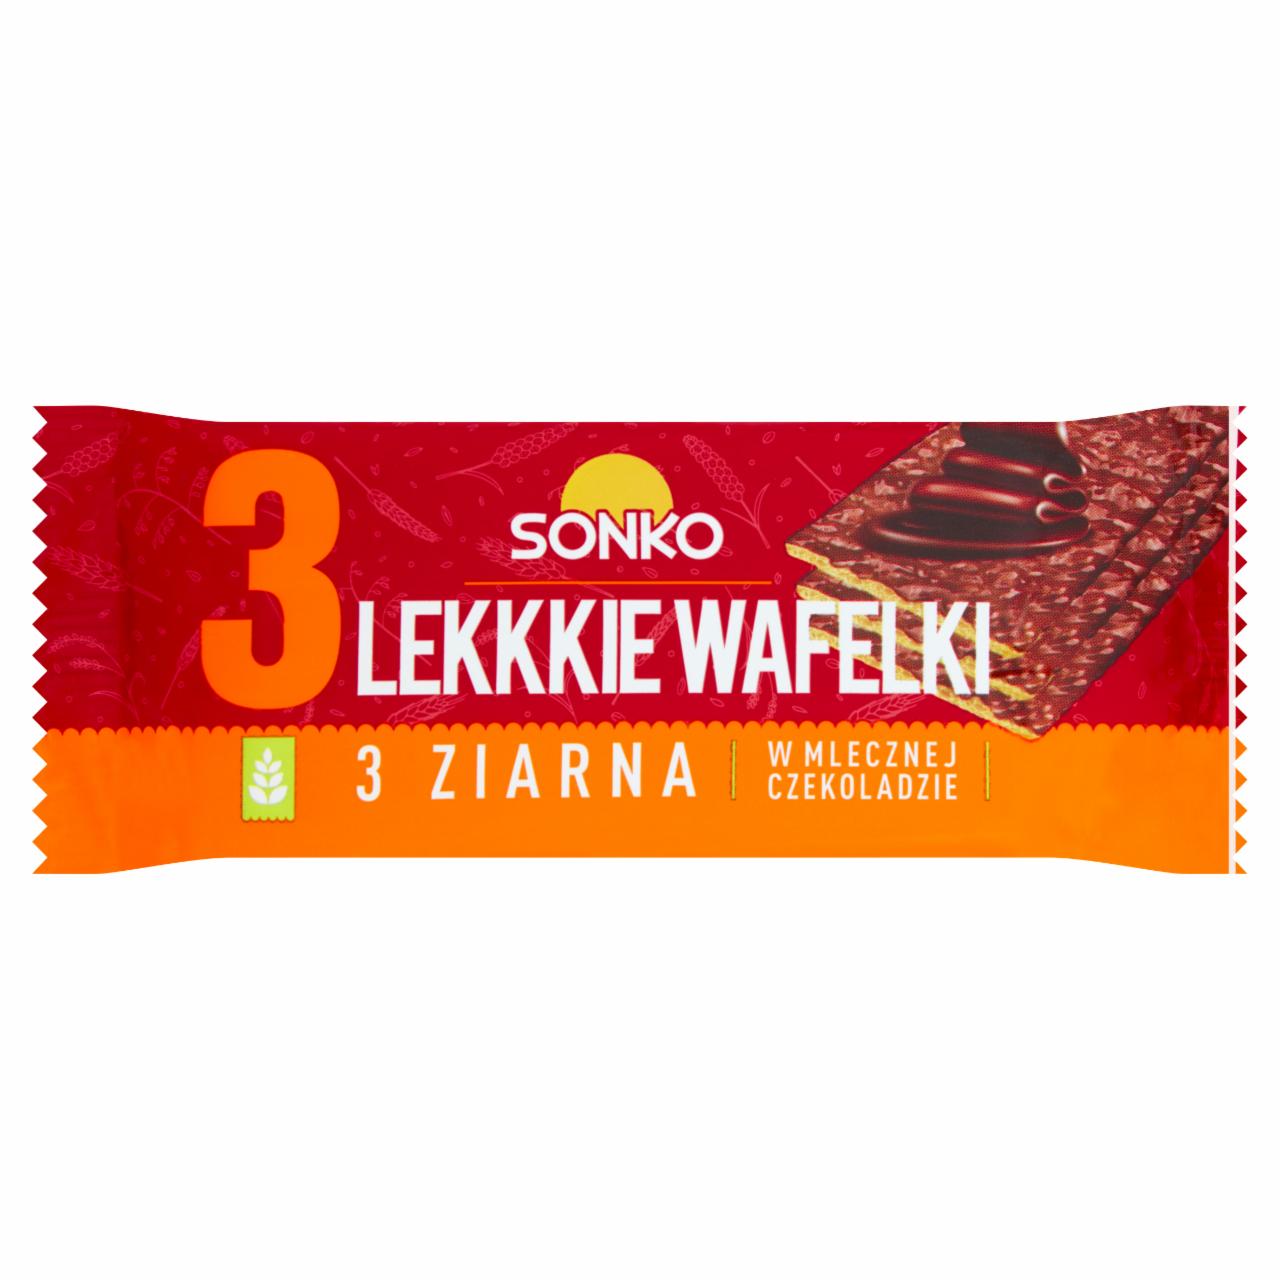 Zdjęcia - Sonko Kids Lekkie wafelki 3 ziarna w mlecznej czekoladzie 36 g (3 sztuki)